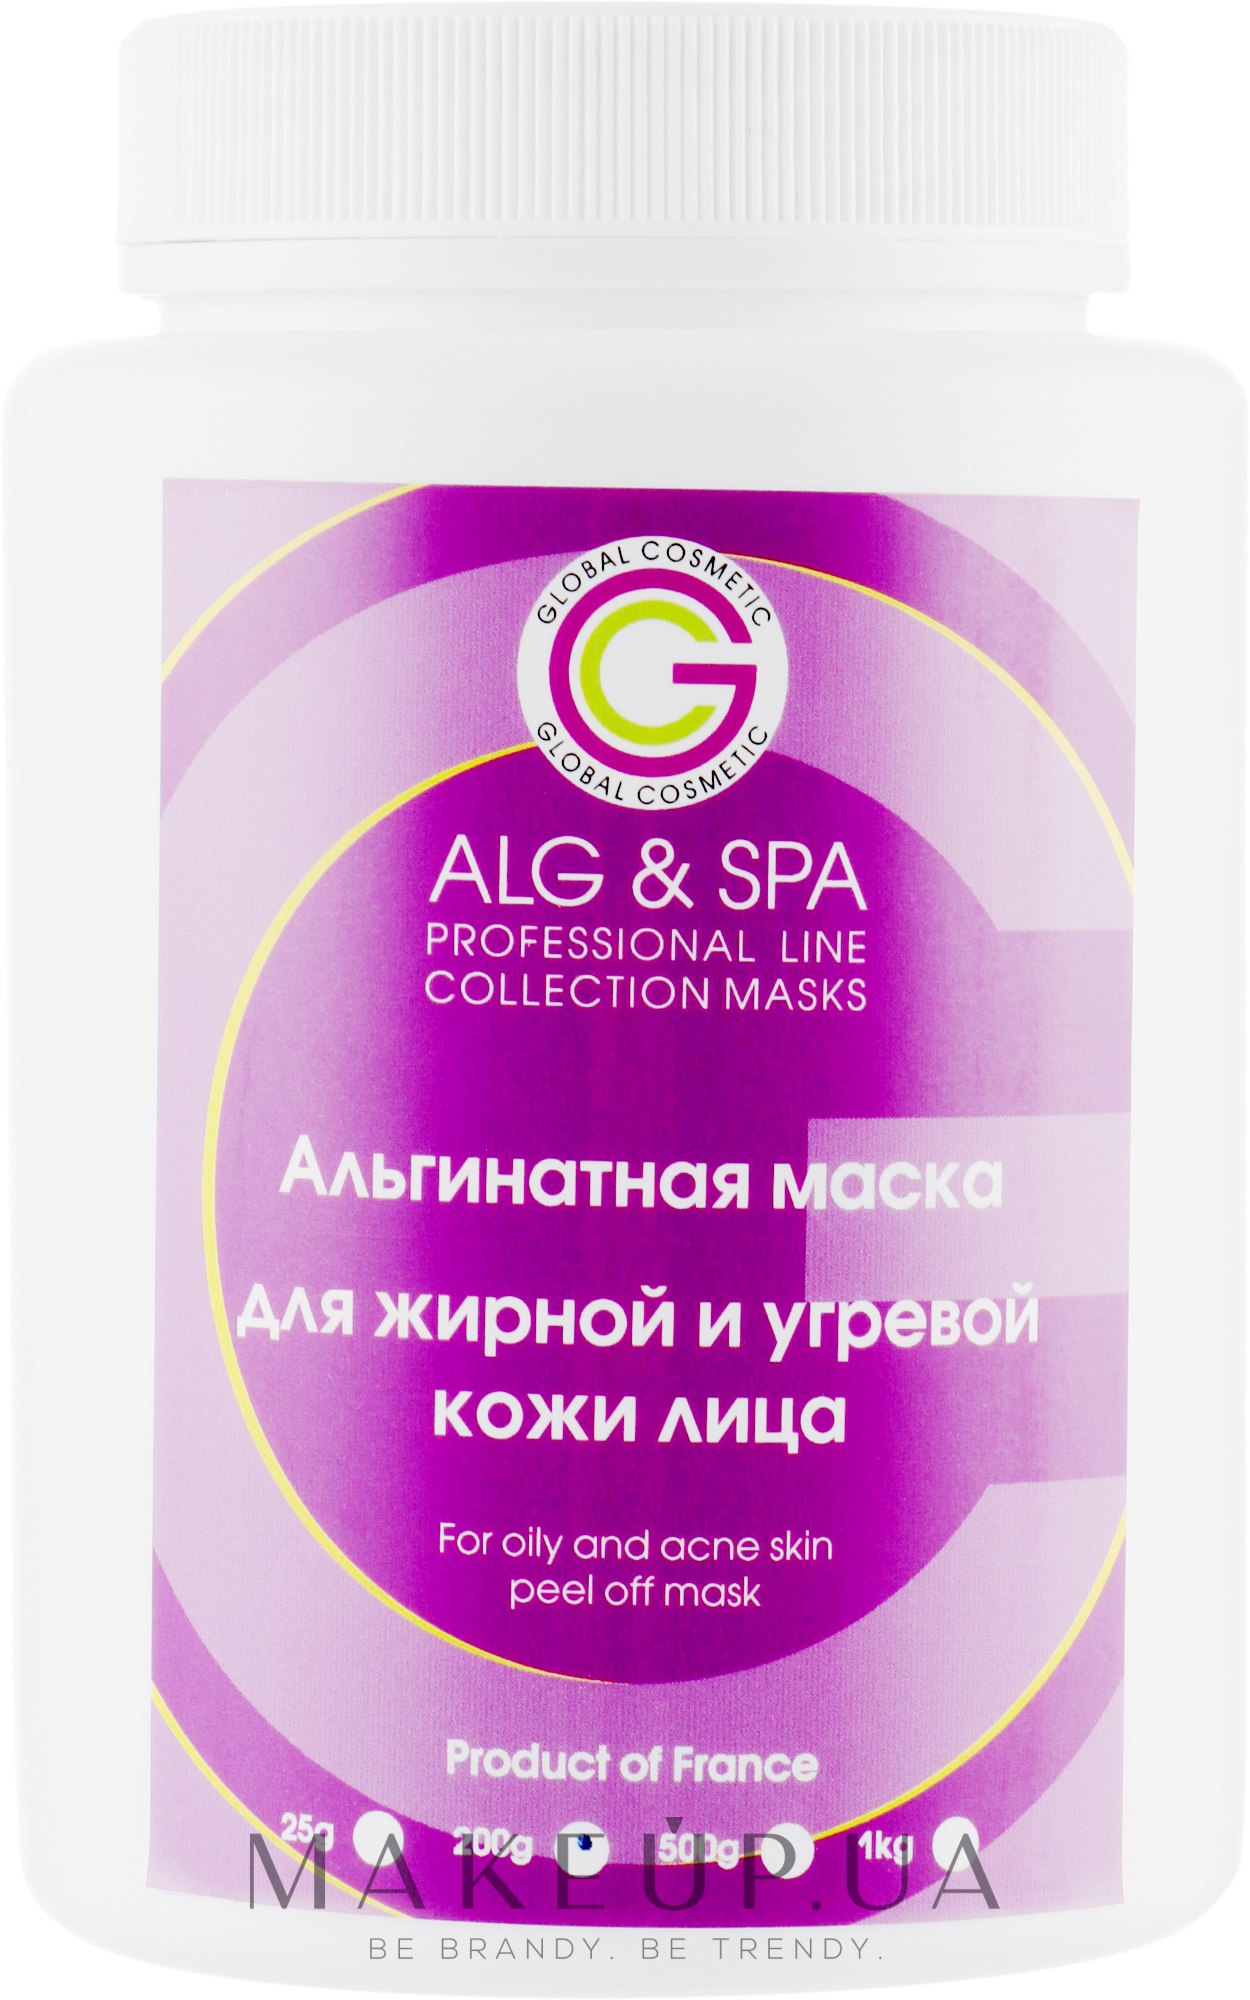 Альгинатная маска для жирной и угревой кожи - ALG & SPA Professional Line Collection Masks For Oily And Acne Skin Peel Off Mask — фото 200g